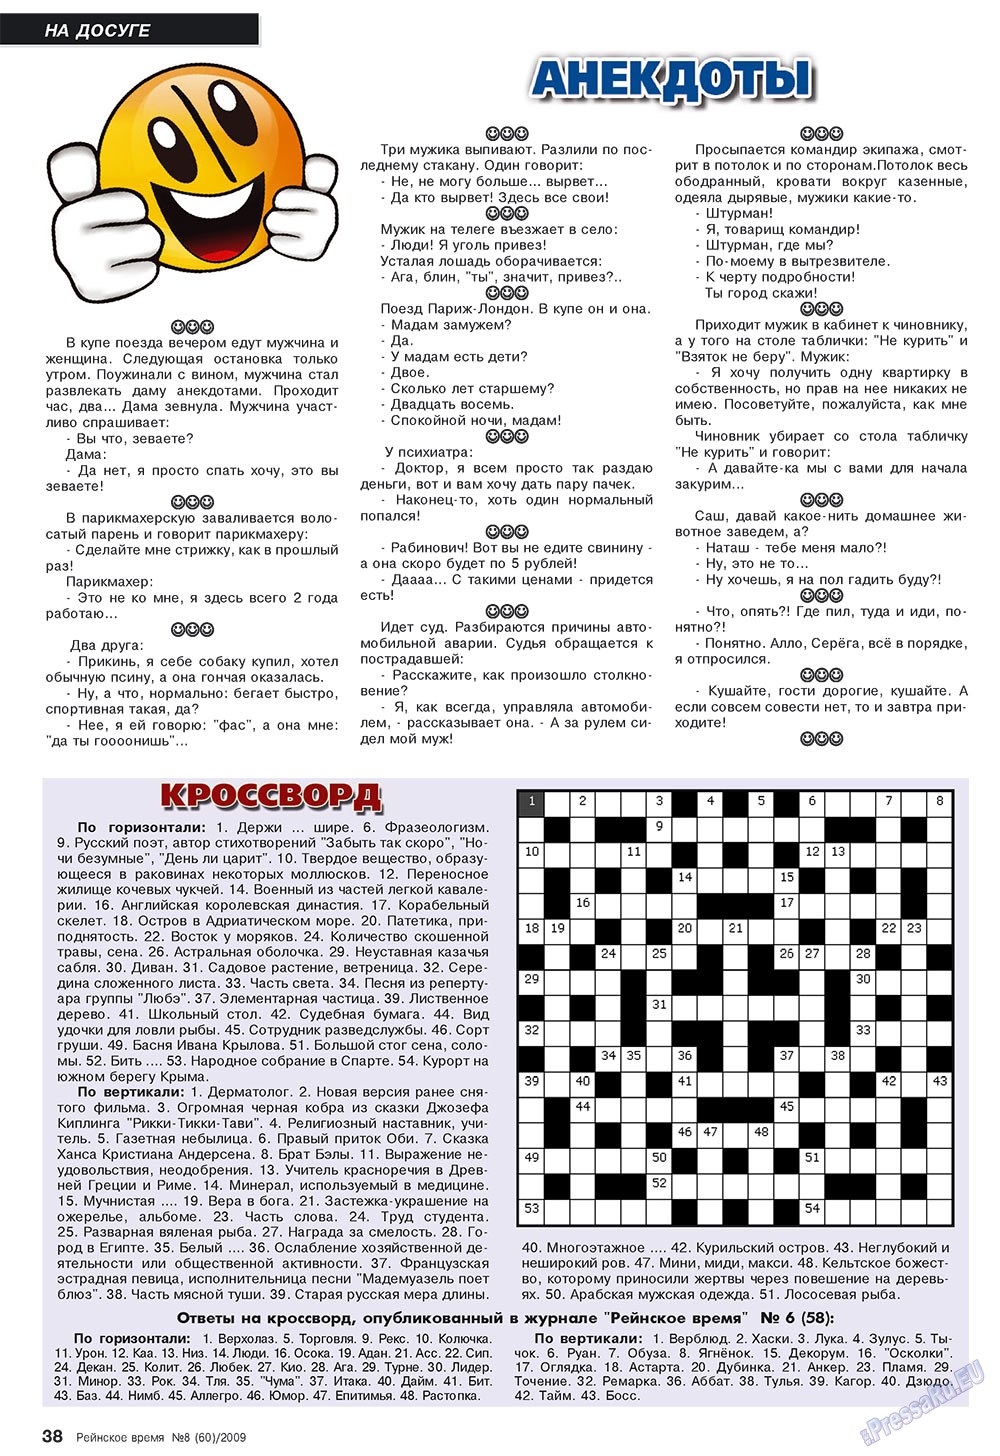 Рейнское время, журнал. 2009 №8 стр.38